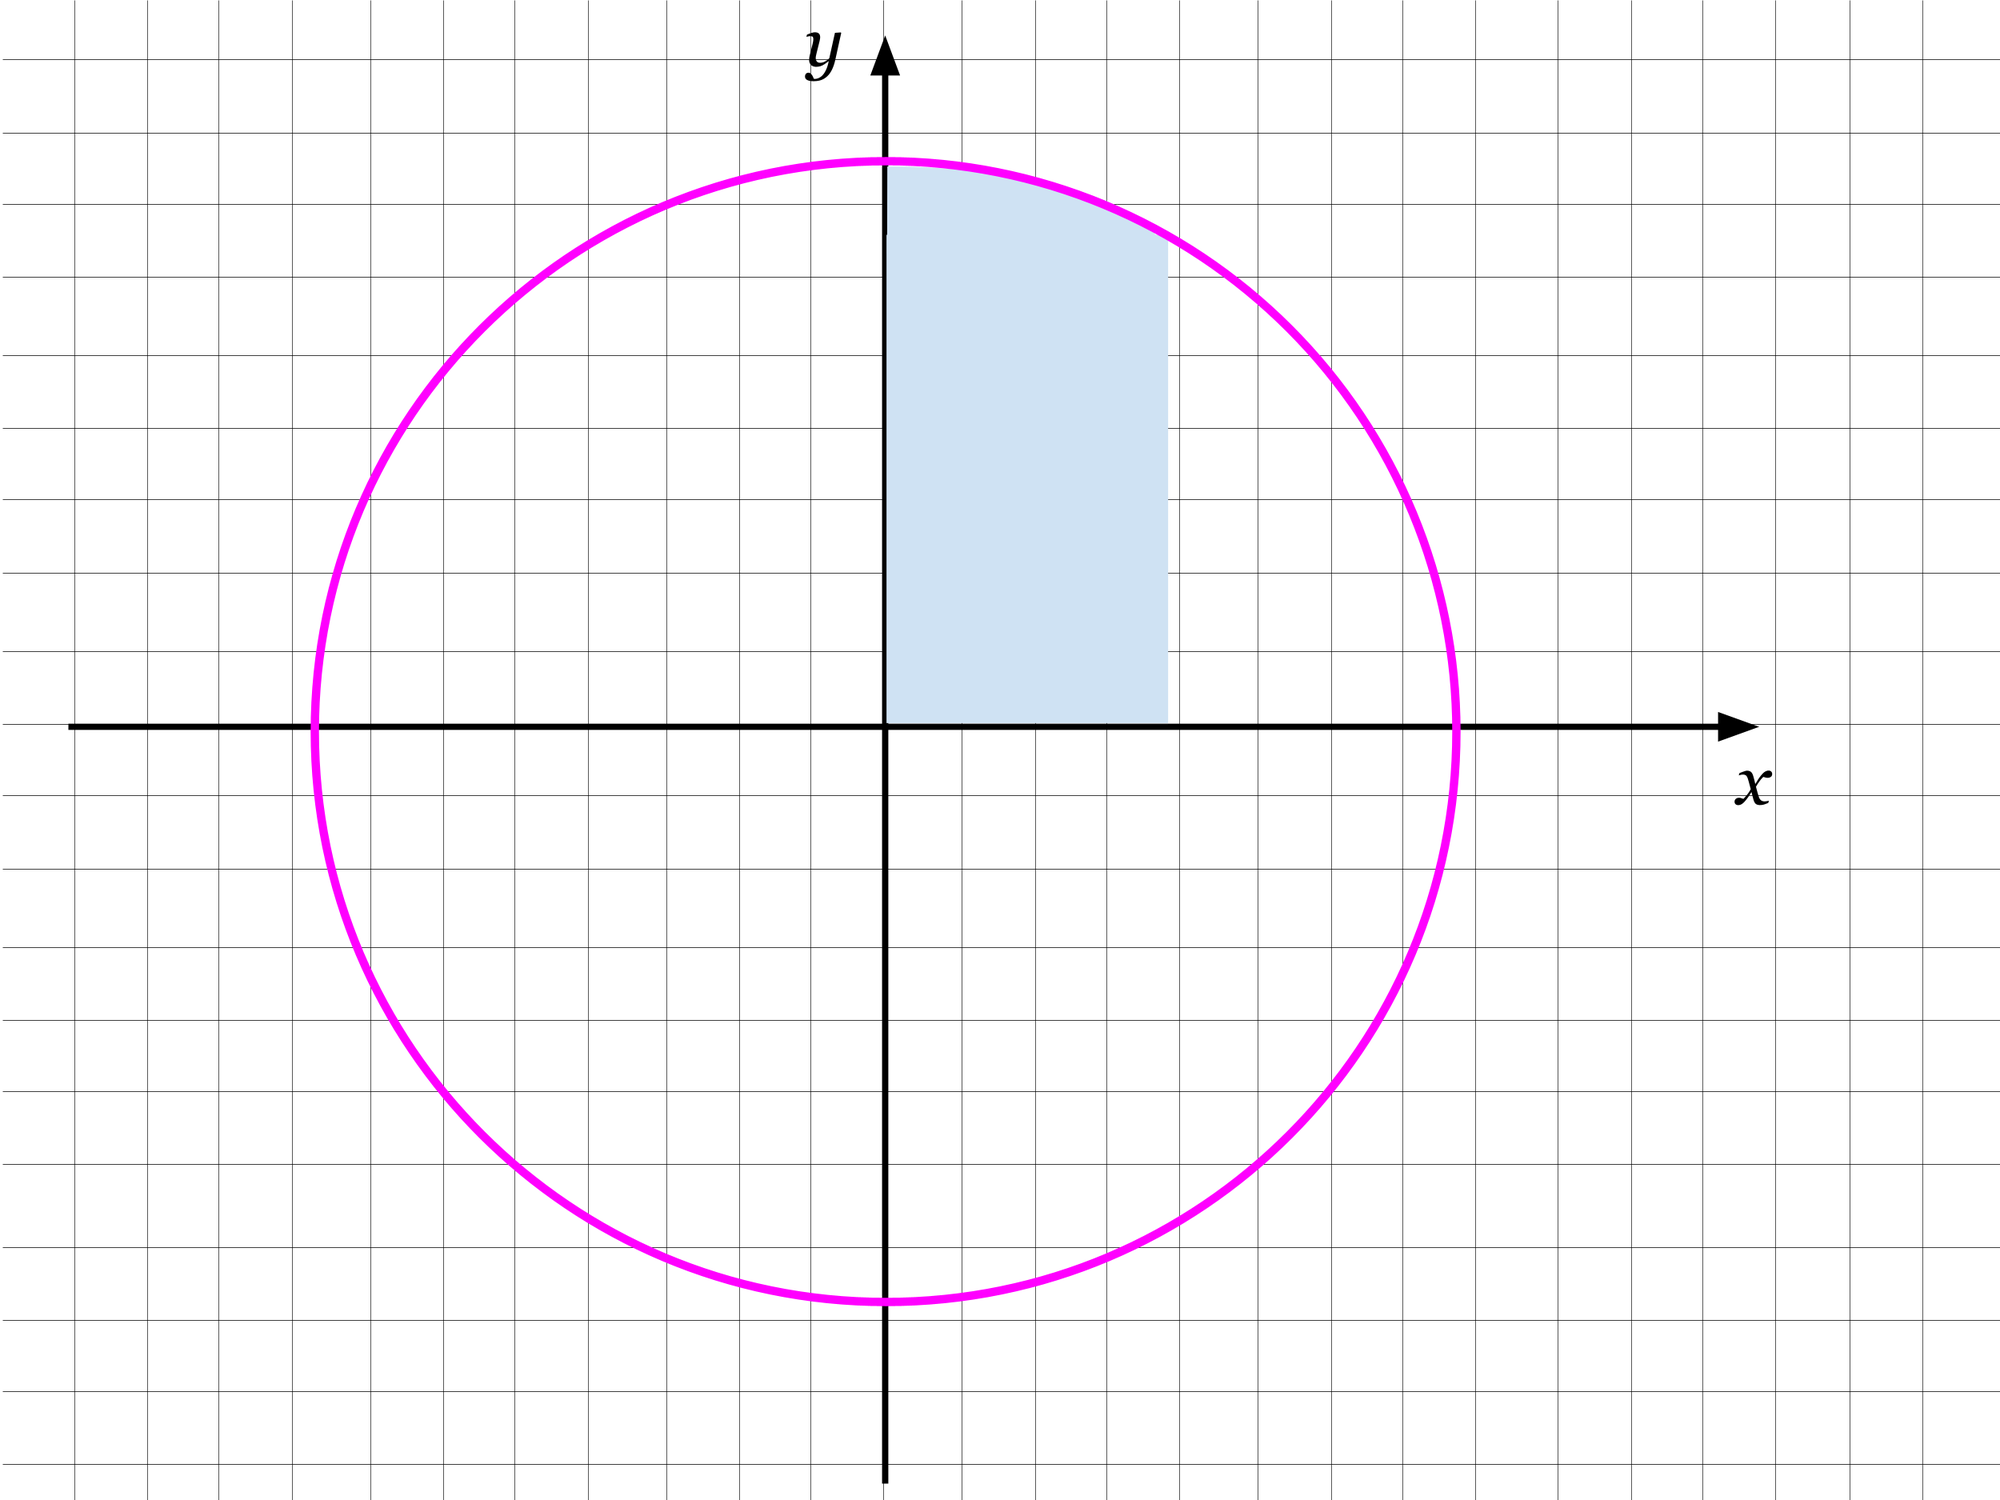 Ein Kreis mit einer markierten Fläche